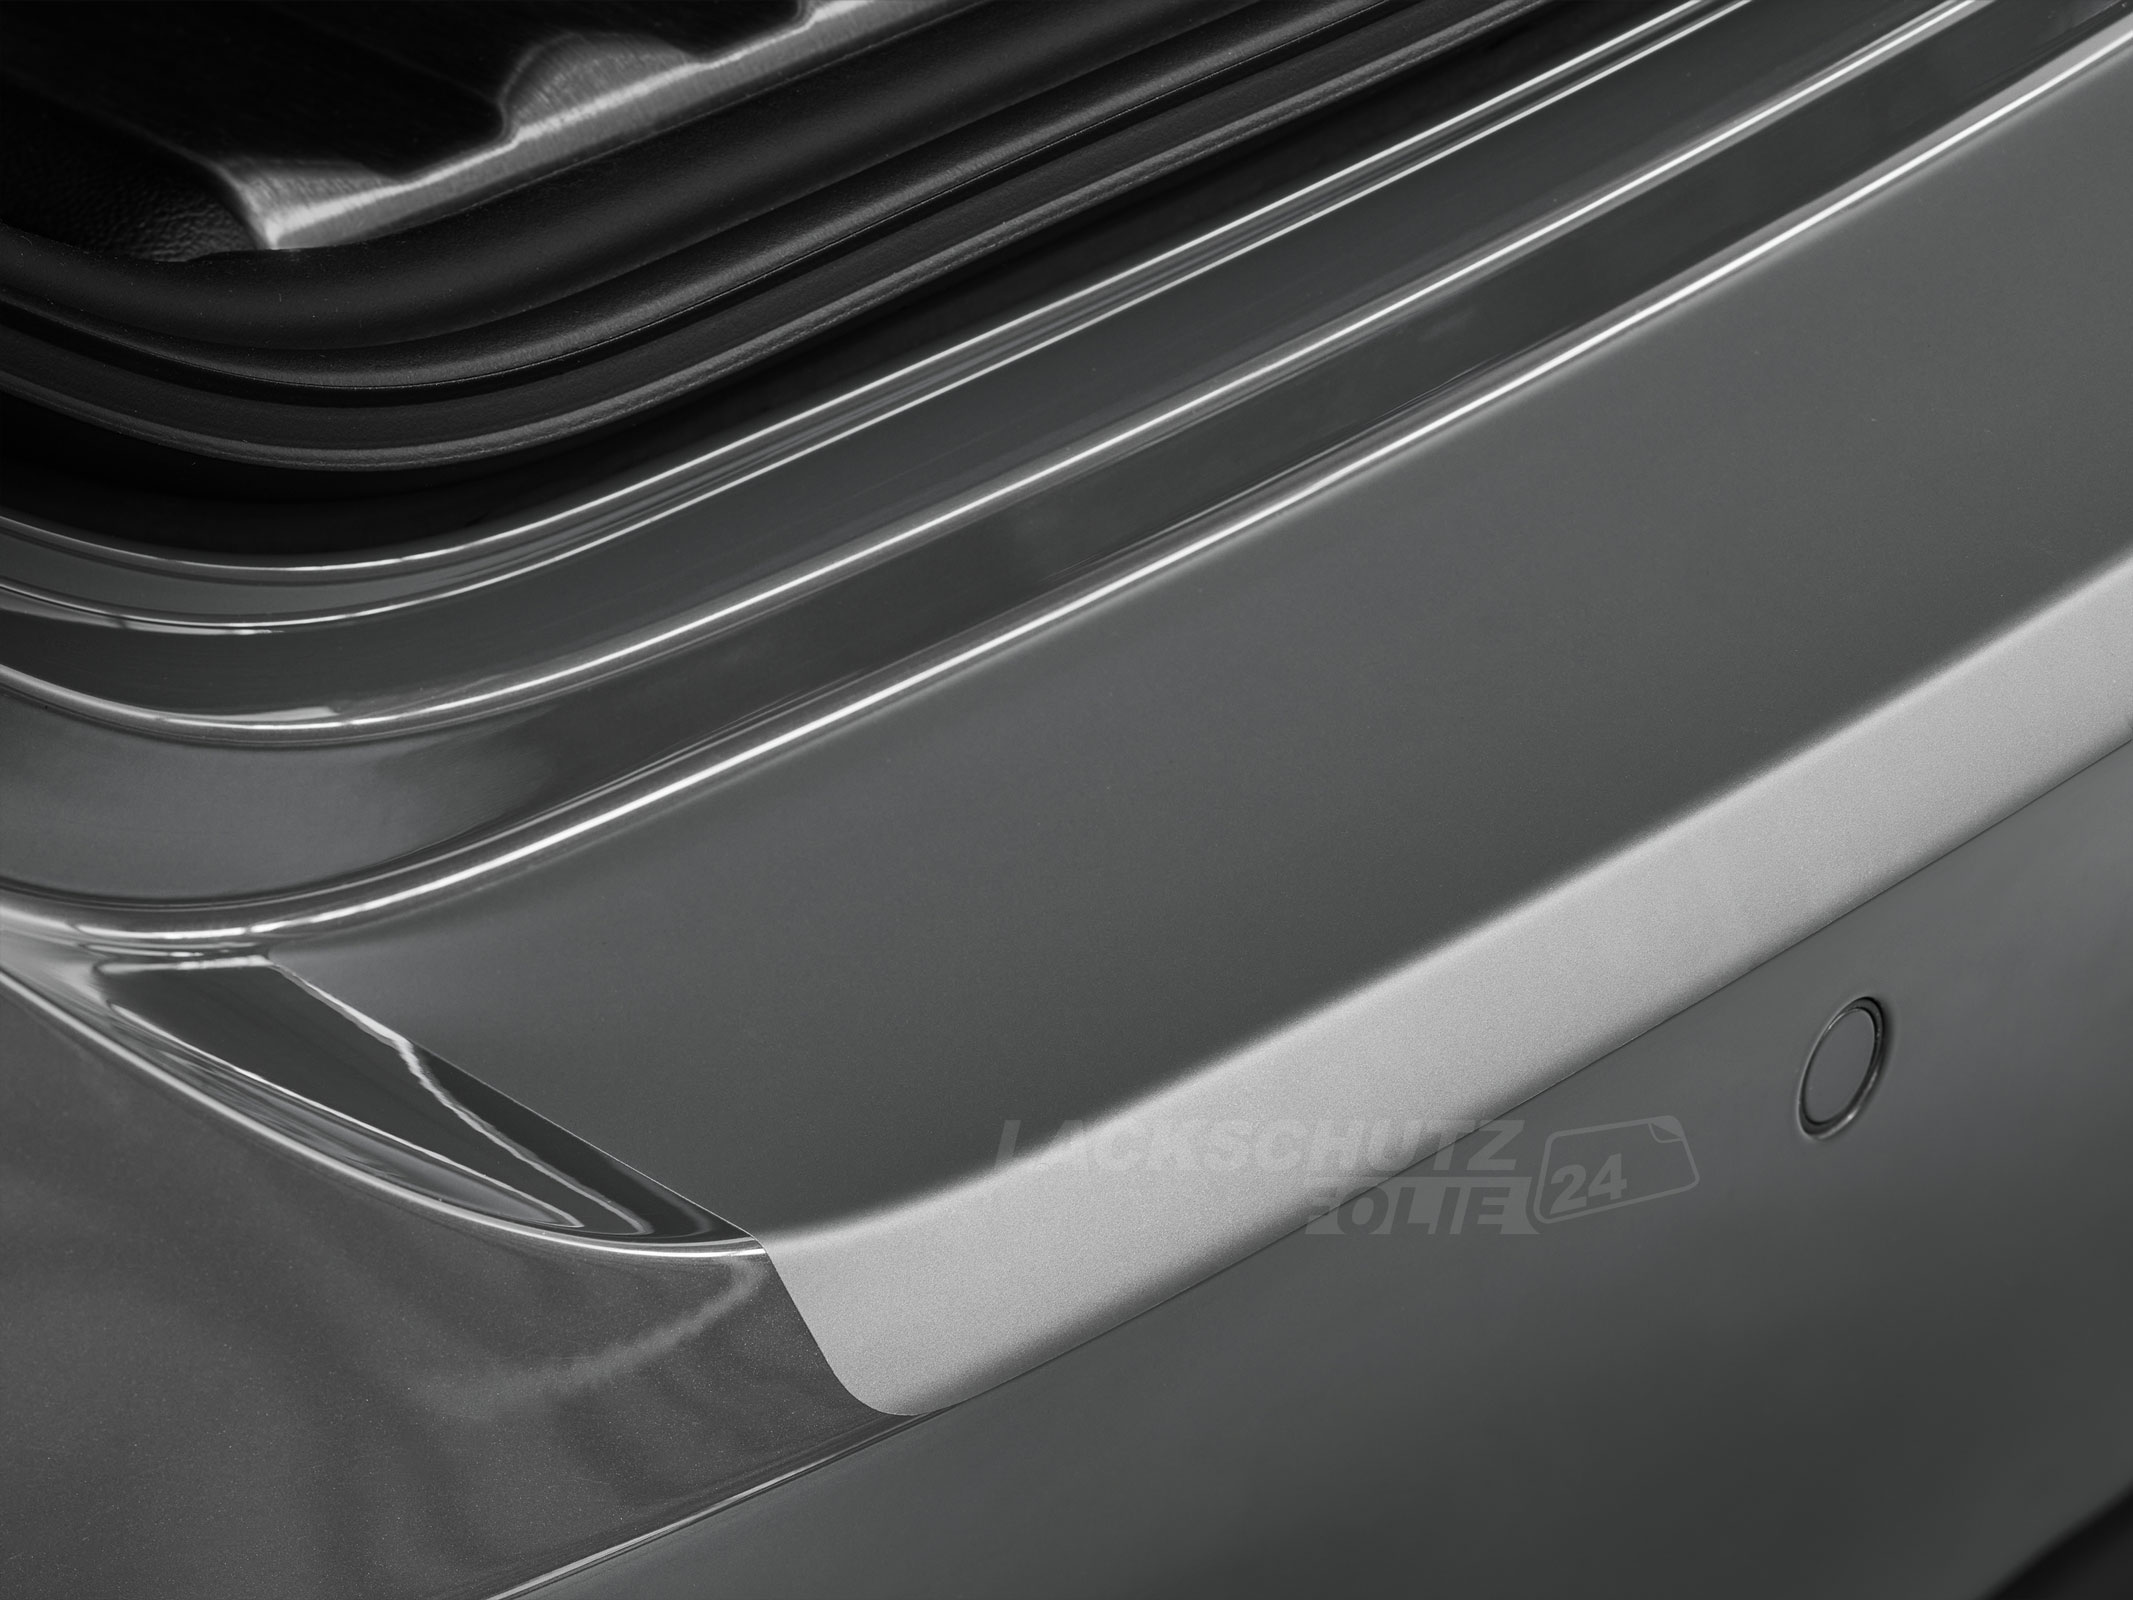 Ladekantenschutzfolie - Transparent Glatt MATT für VW / Volkswagen Golf Sportsvan ab BJ 04/2014